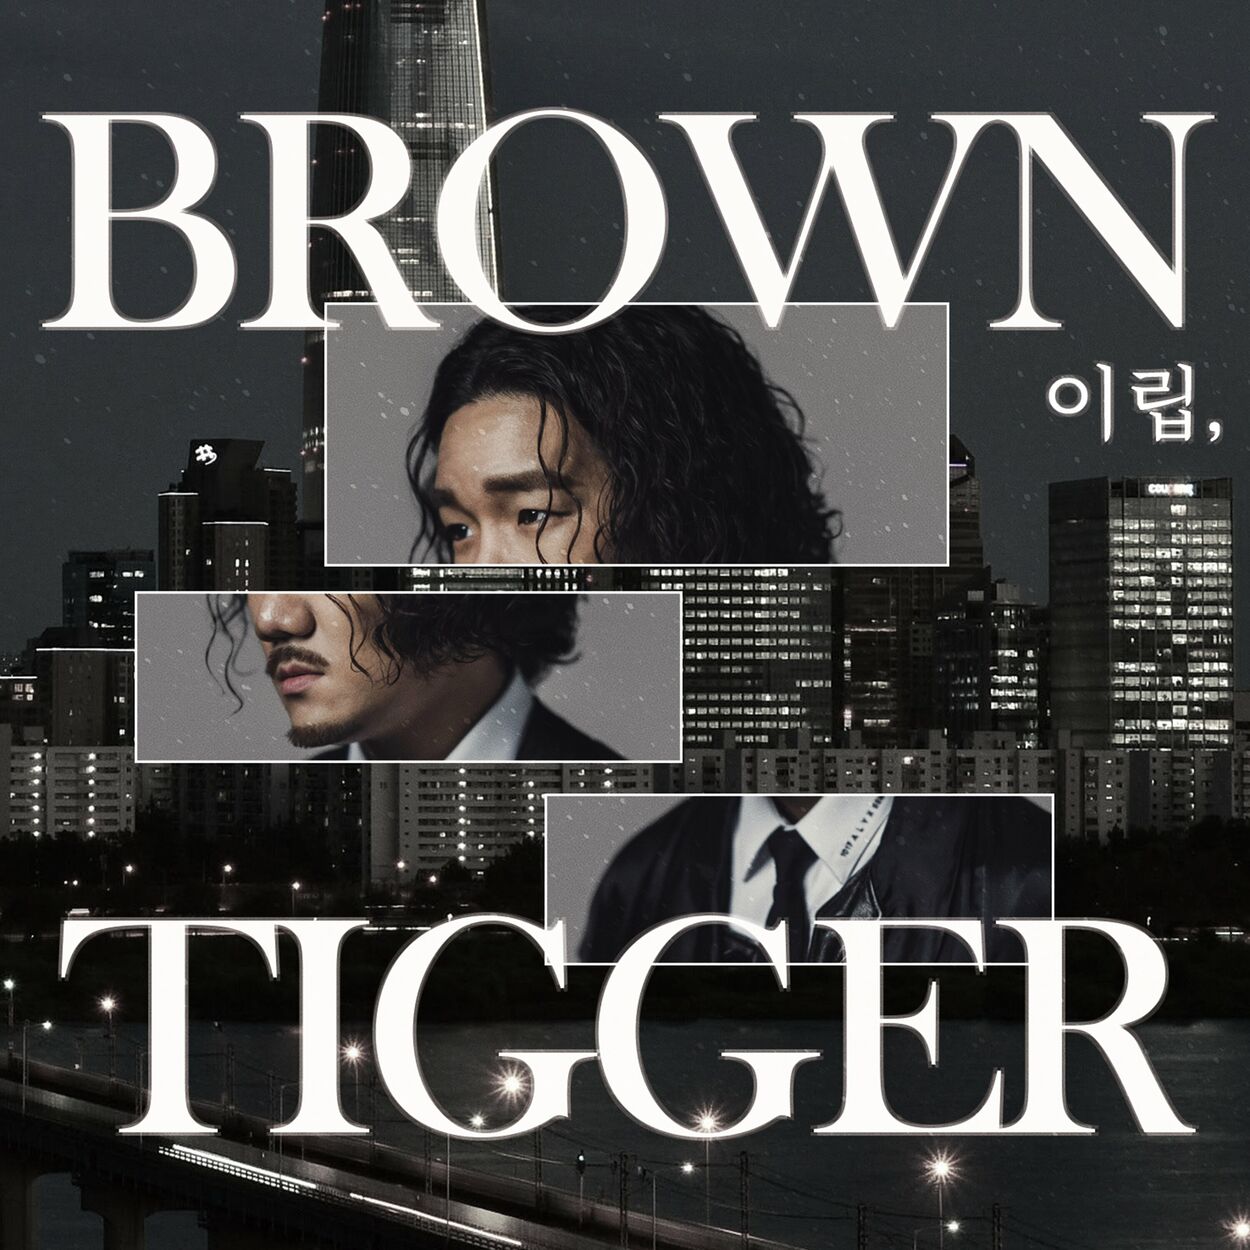 Brown Tigger – Yi-Rip